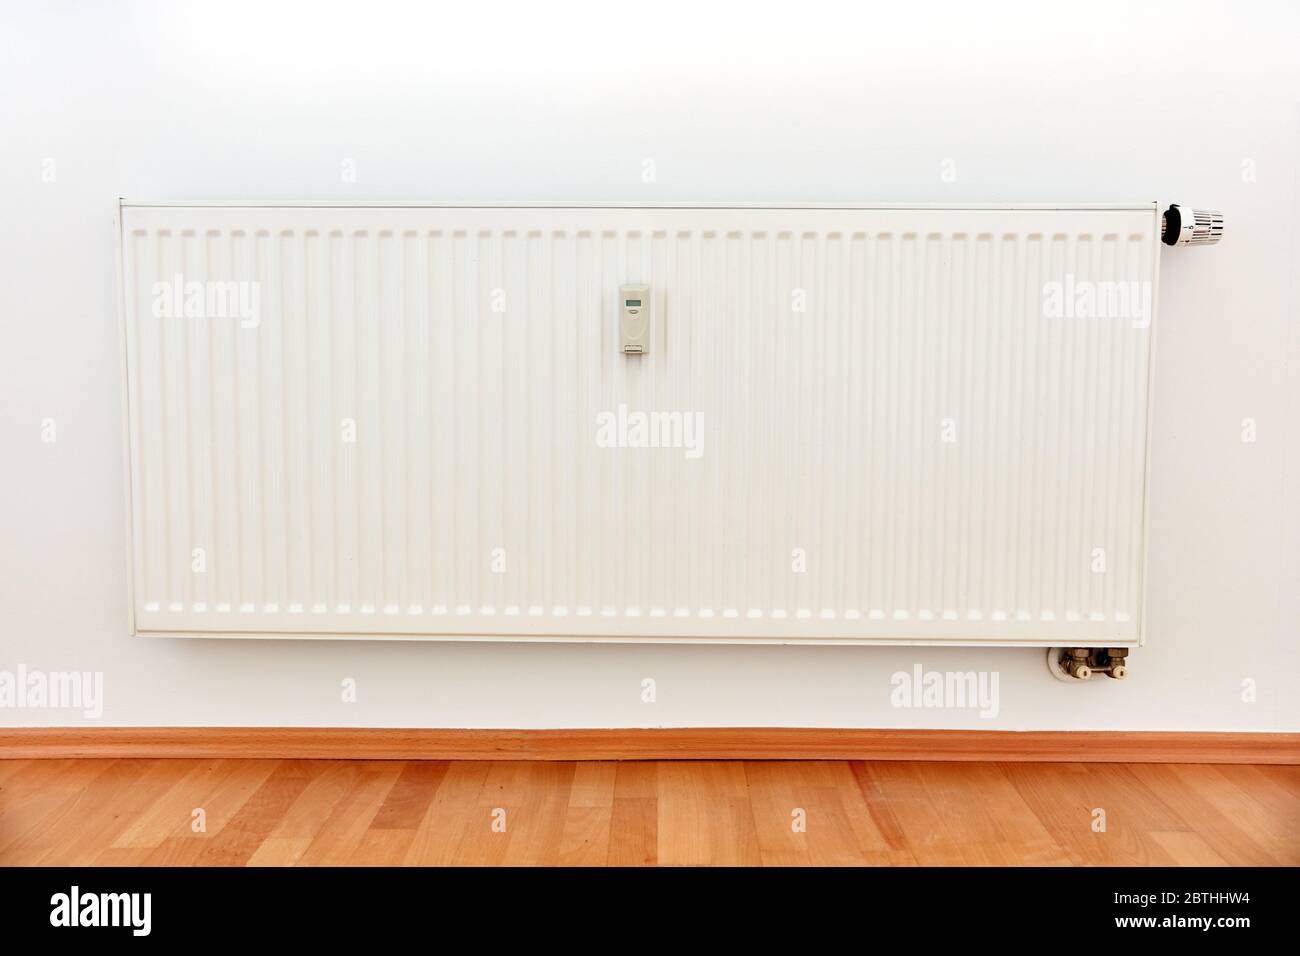 Wärmekostenzuweisungsfunktion für Fernablesung auf weißer Heizung in einer  Wohnung Stockfotografie - Alamy